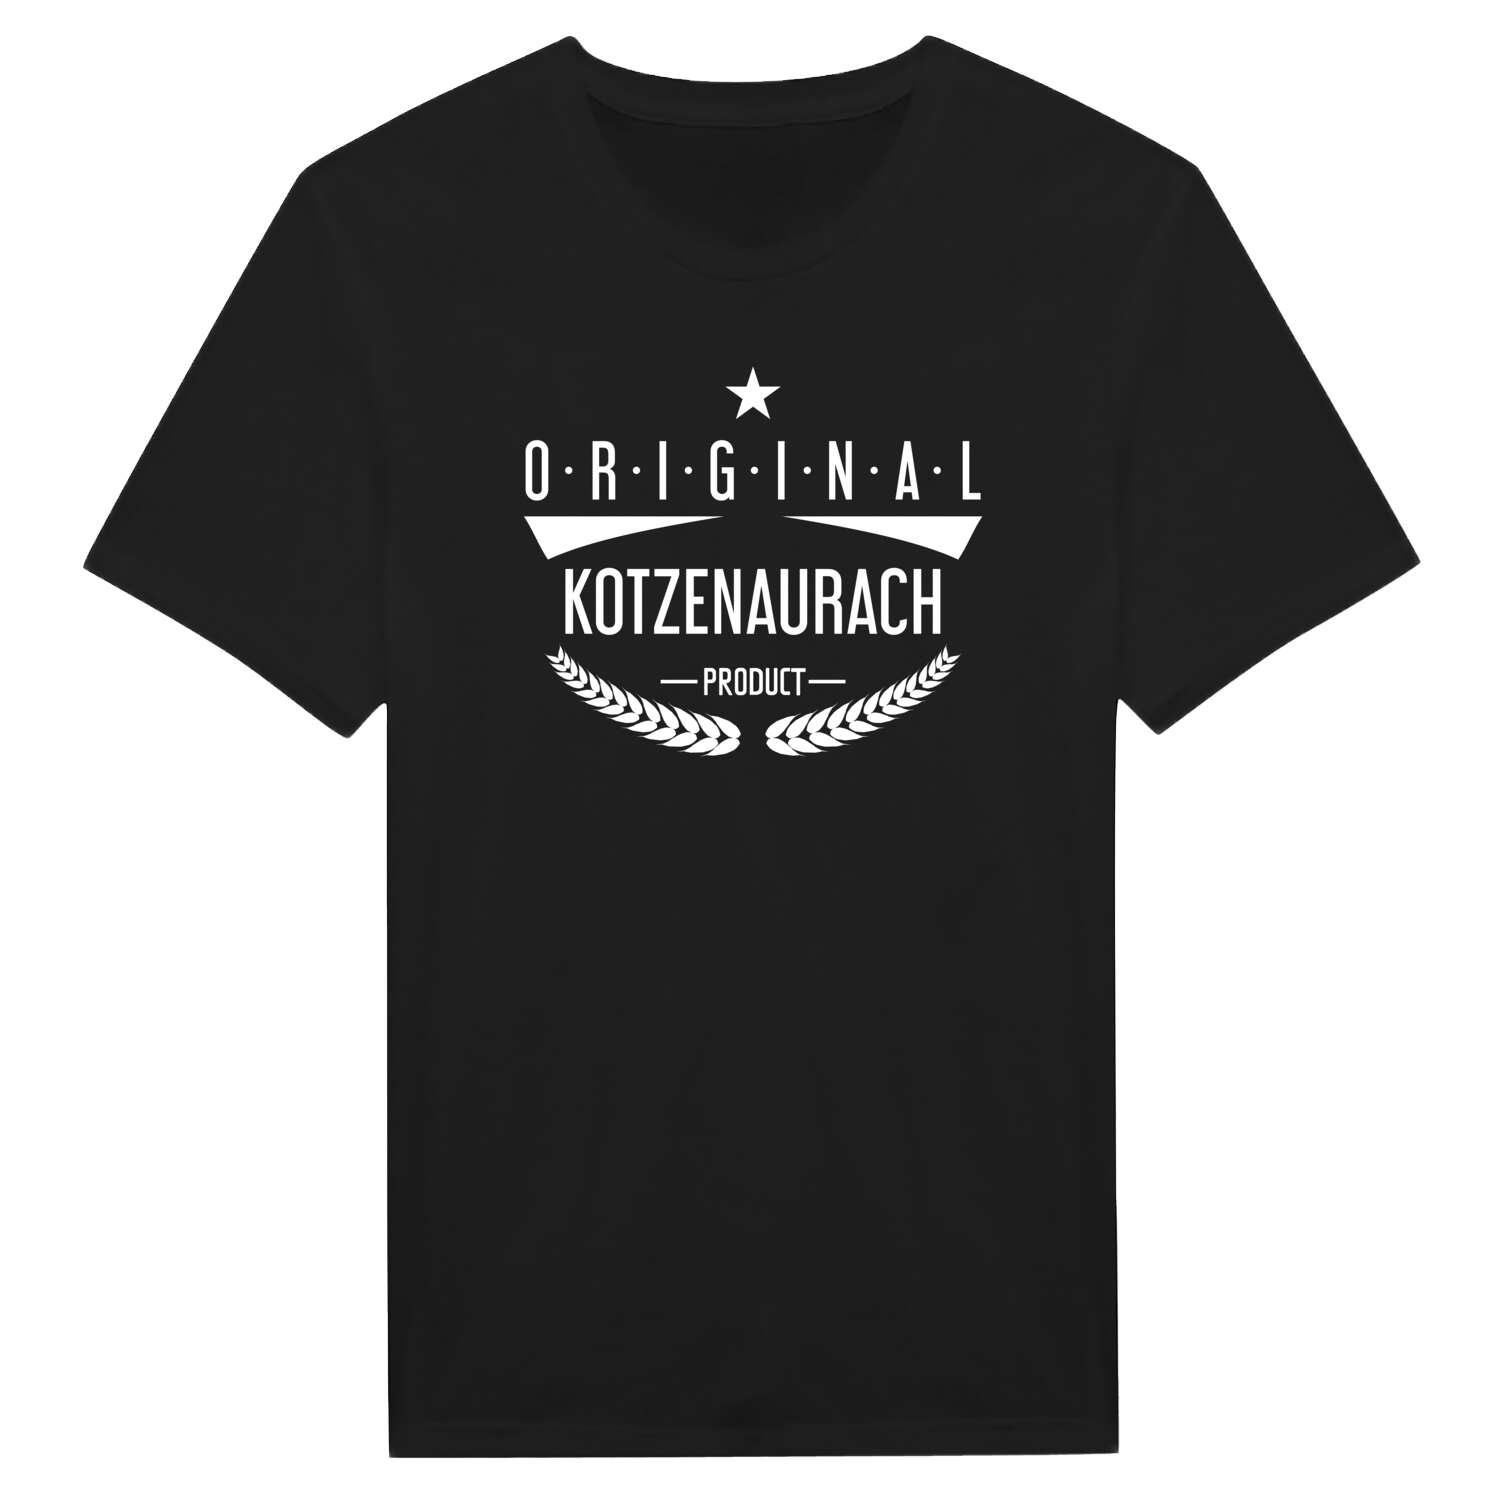 Kotzenaurach T-Shirt »Original Product«